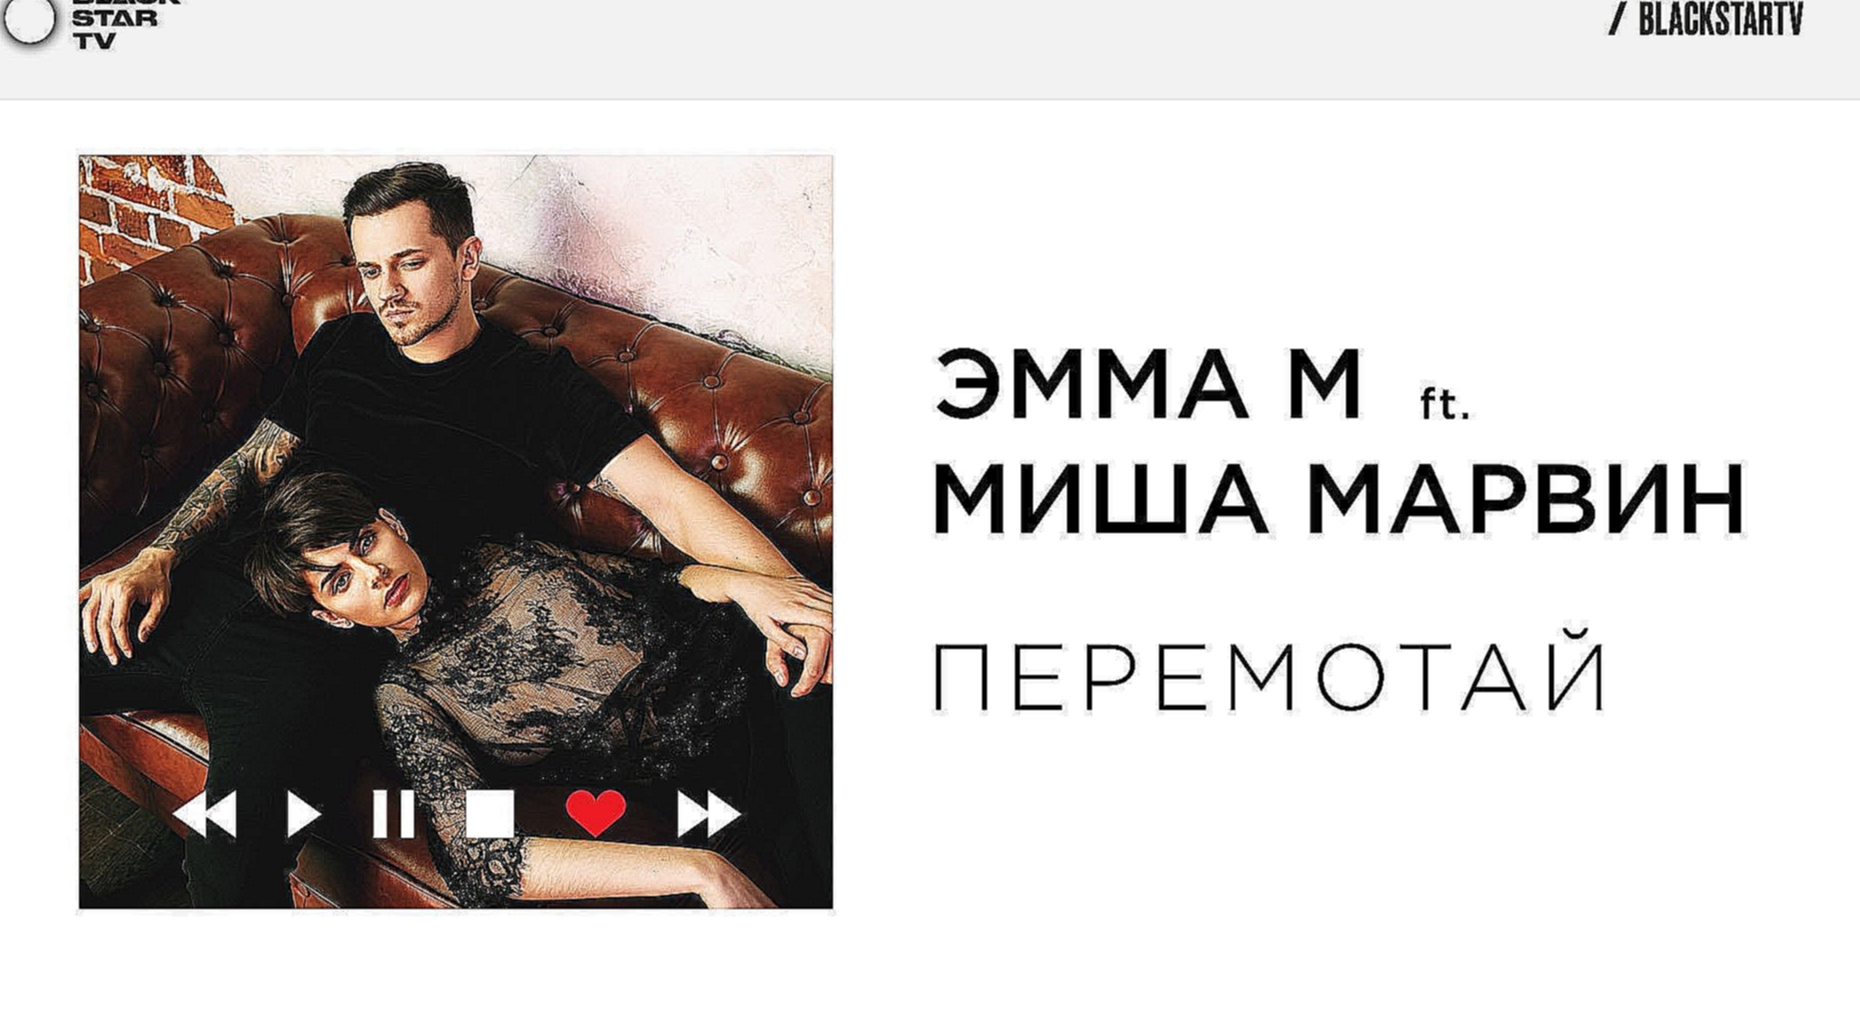 ЭММА М ft. Миша Марвин - Перемотай премьера трека, 2017  